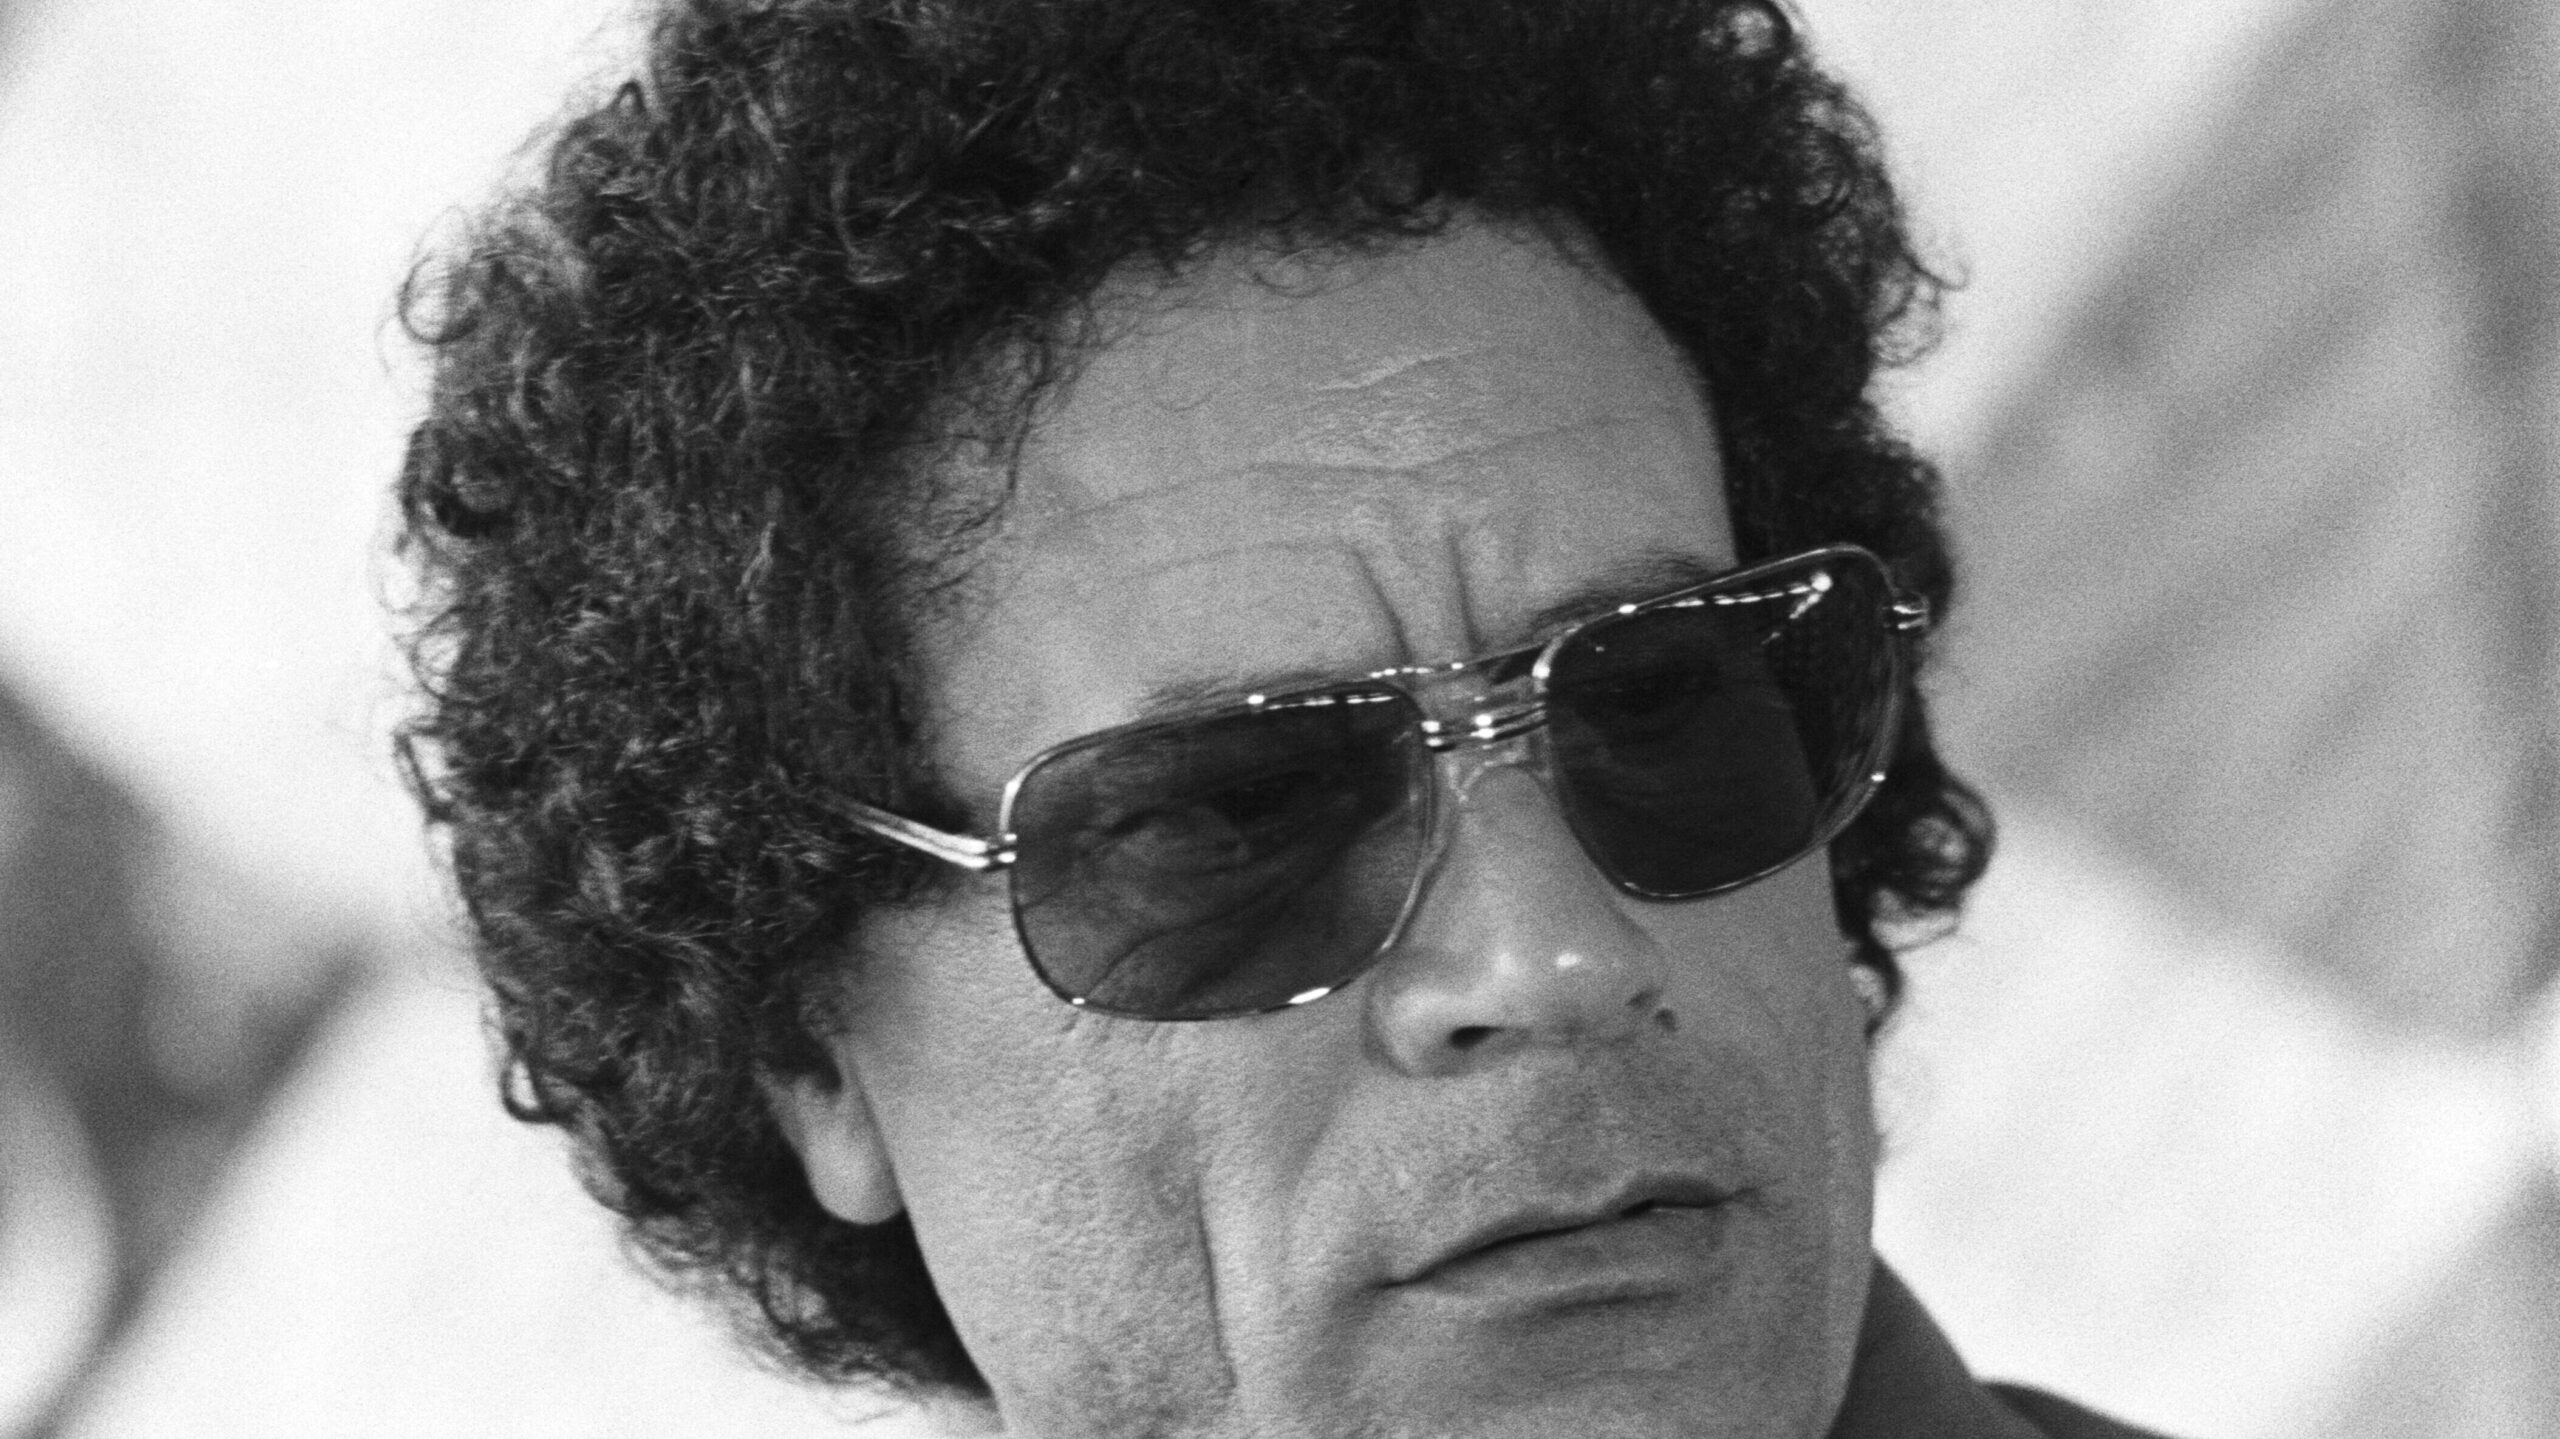 Colonel Muammar Gaddafi in black and white wearing sunglasses.